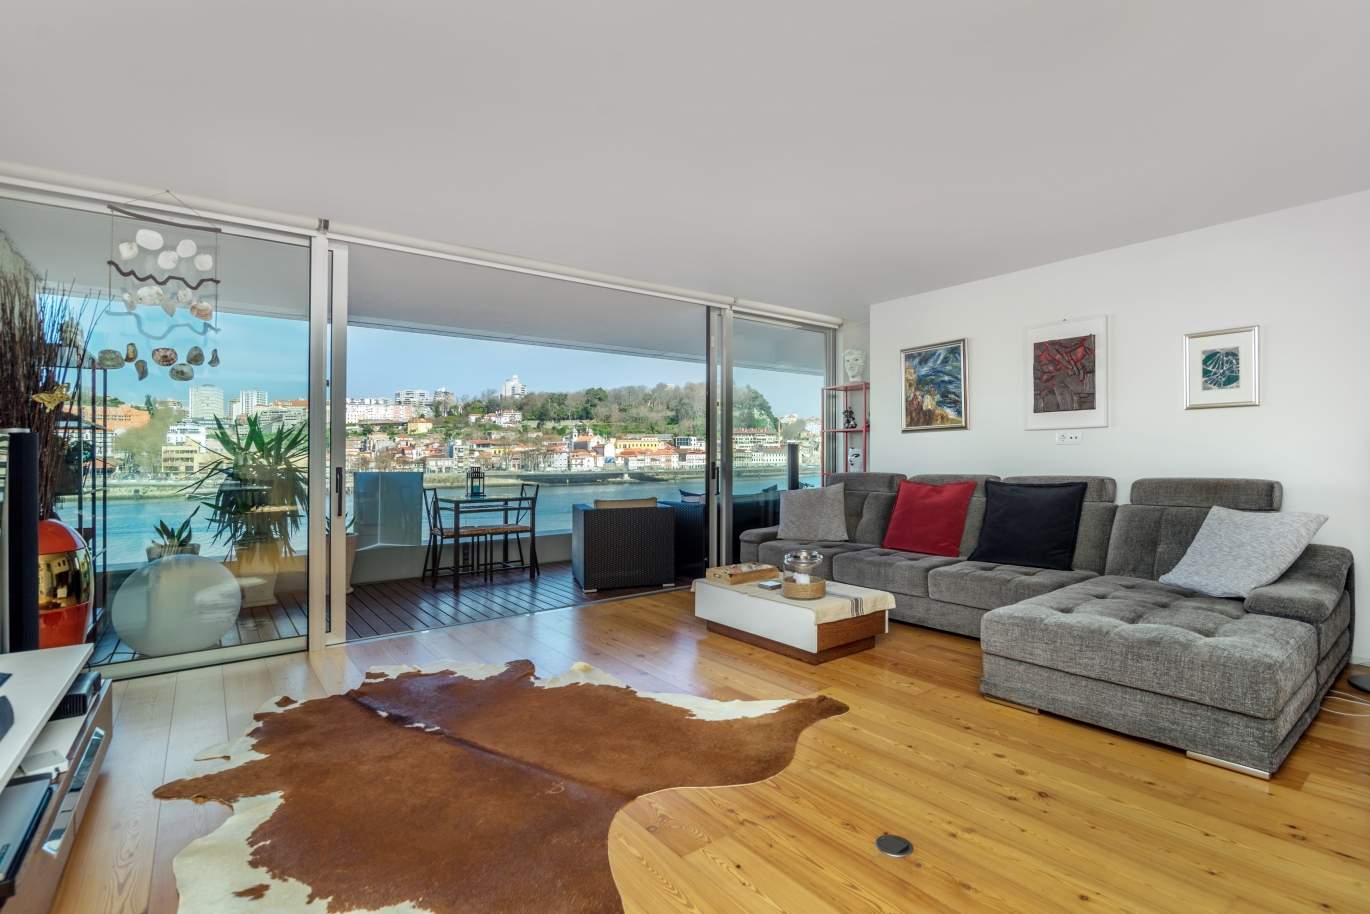 Venda apartamento de luxo com vistas rio, V. N. Gaia, Porto, Portugal_99240